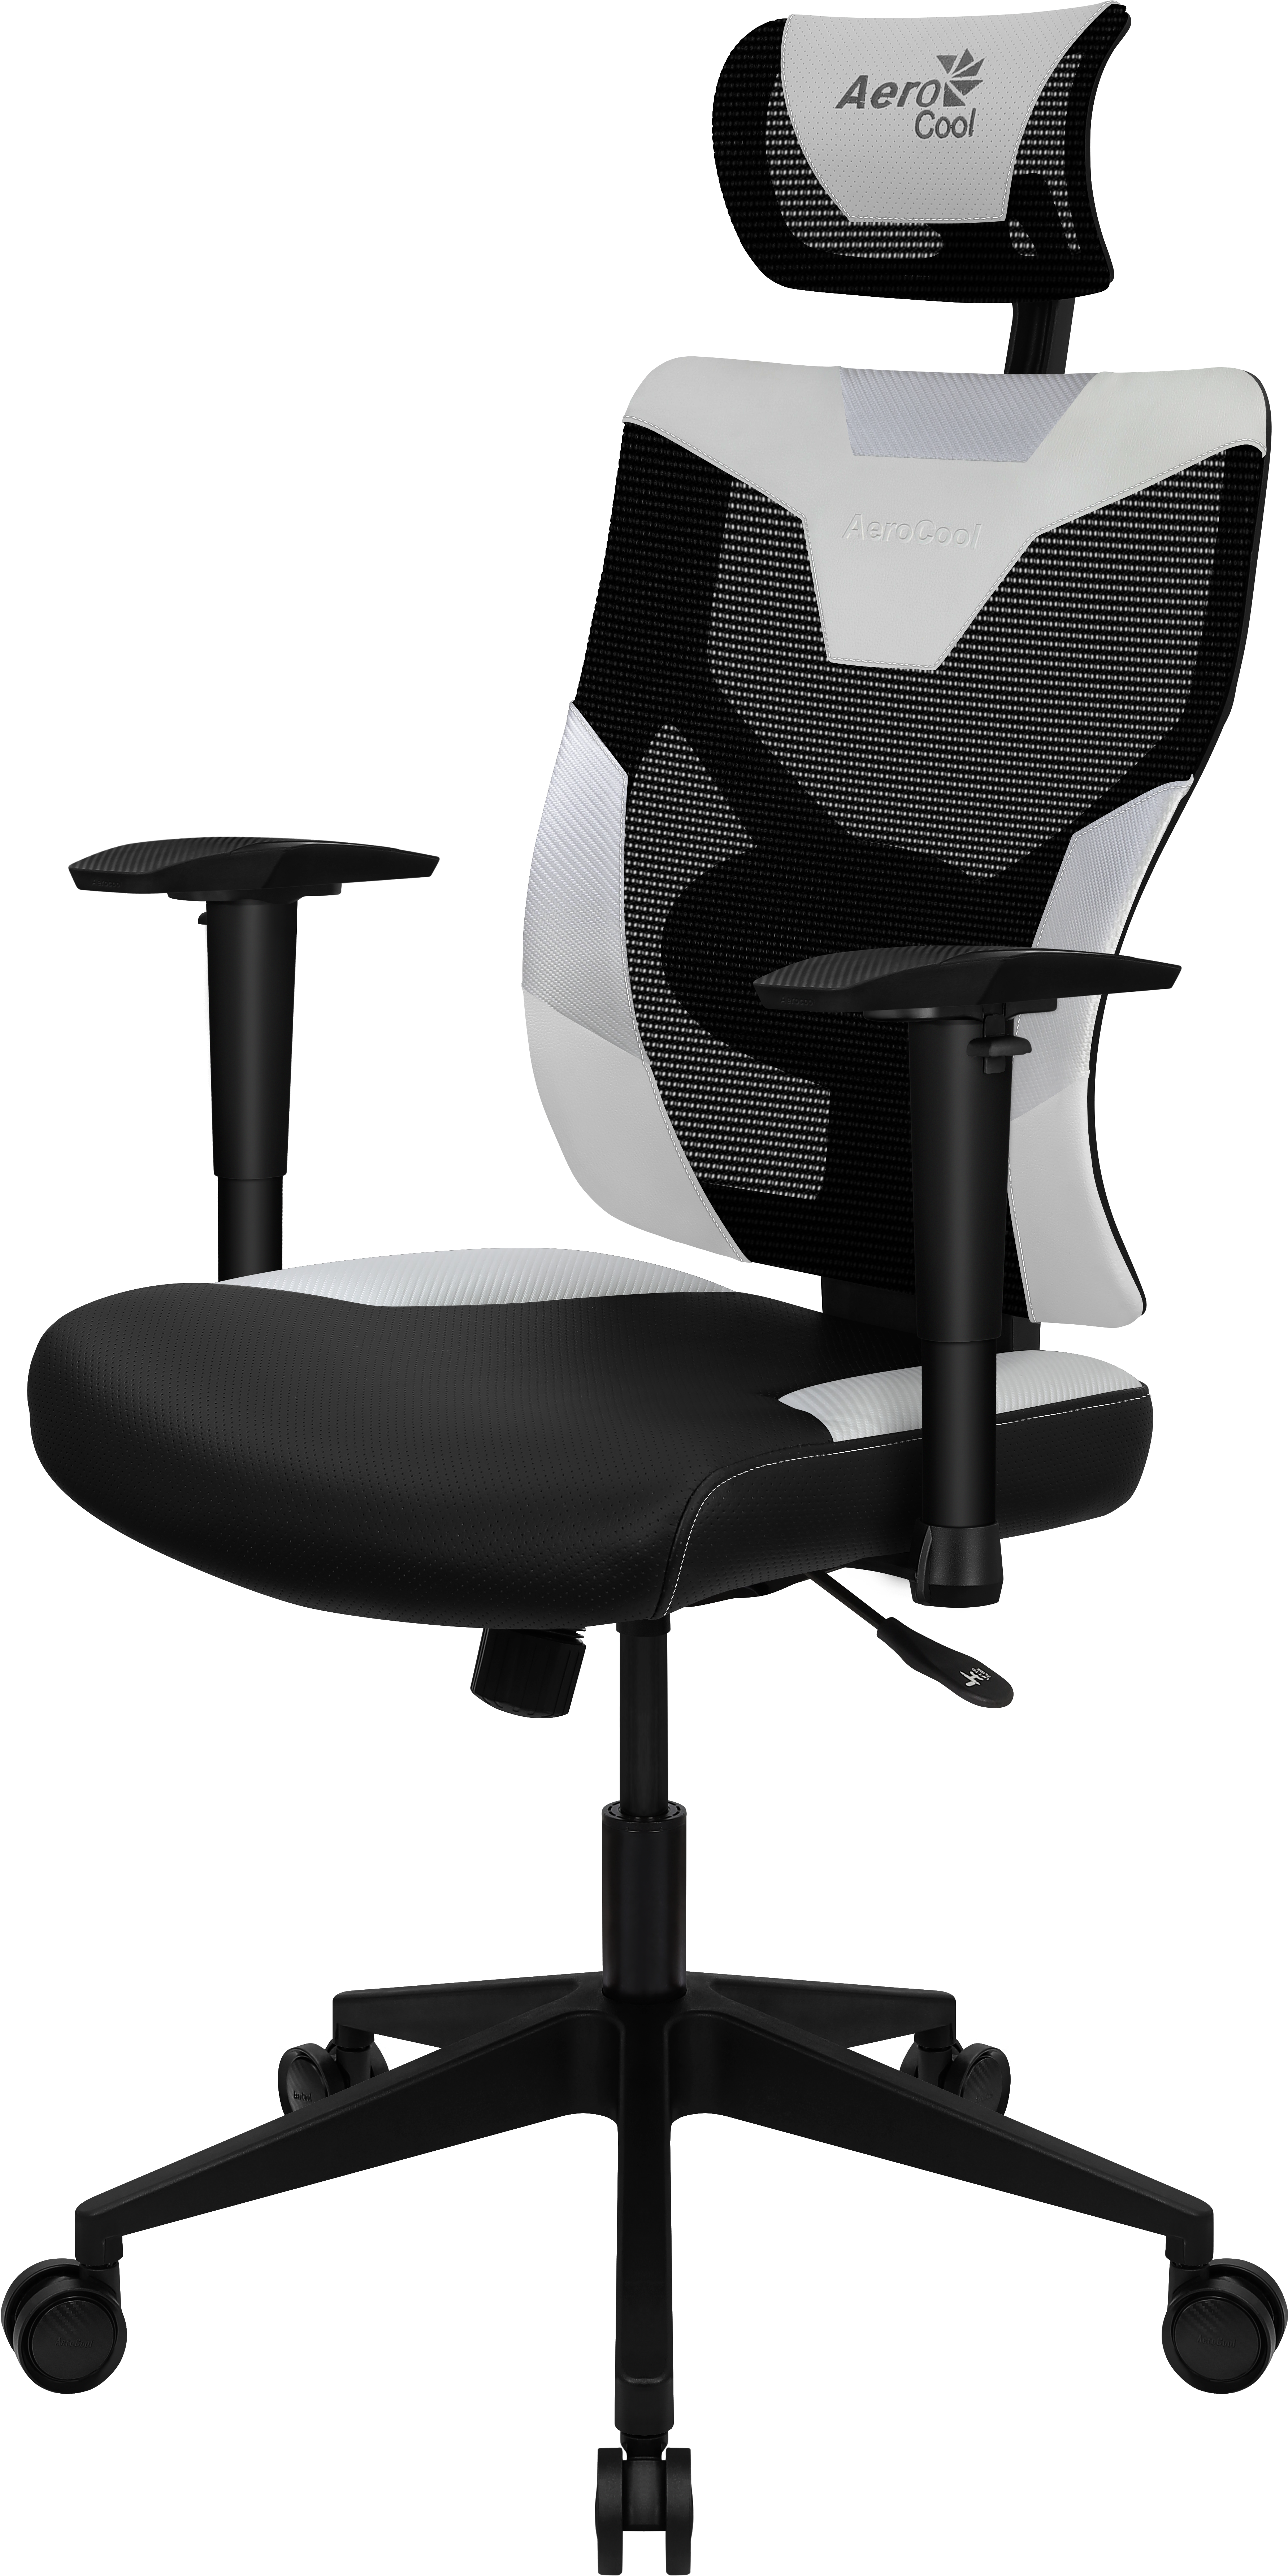 Aerocool - Aerocool Guardian Gaming Chair - Azure White